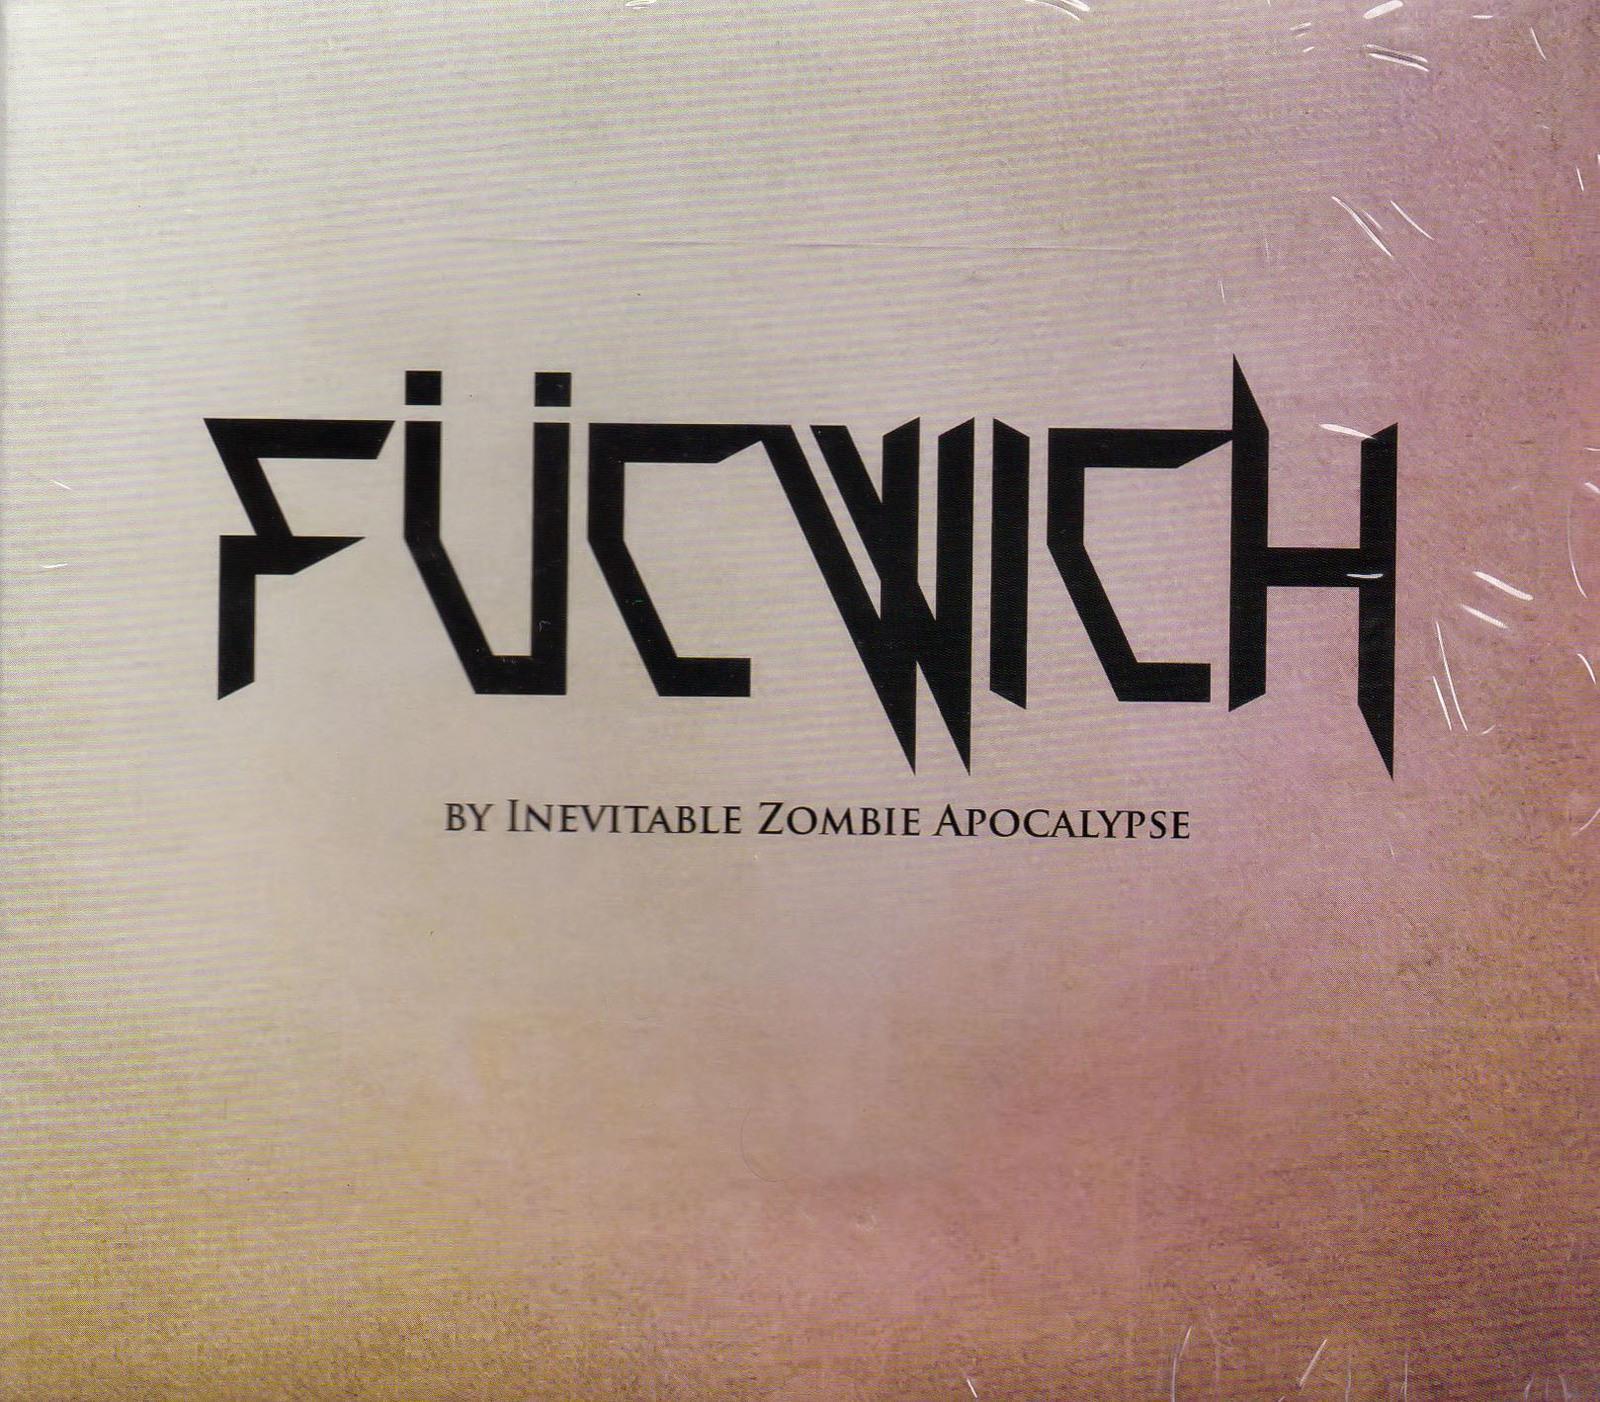 Fucwich -Inevitable Zombie Apocalypse CD